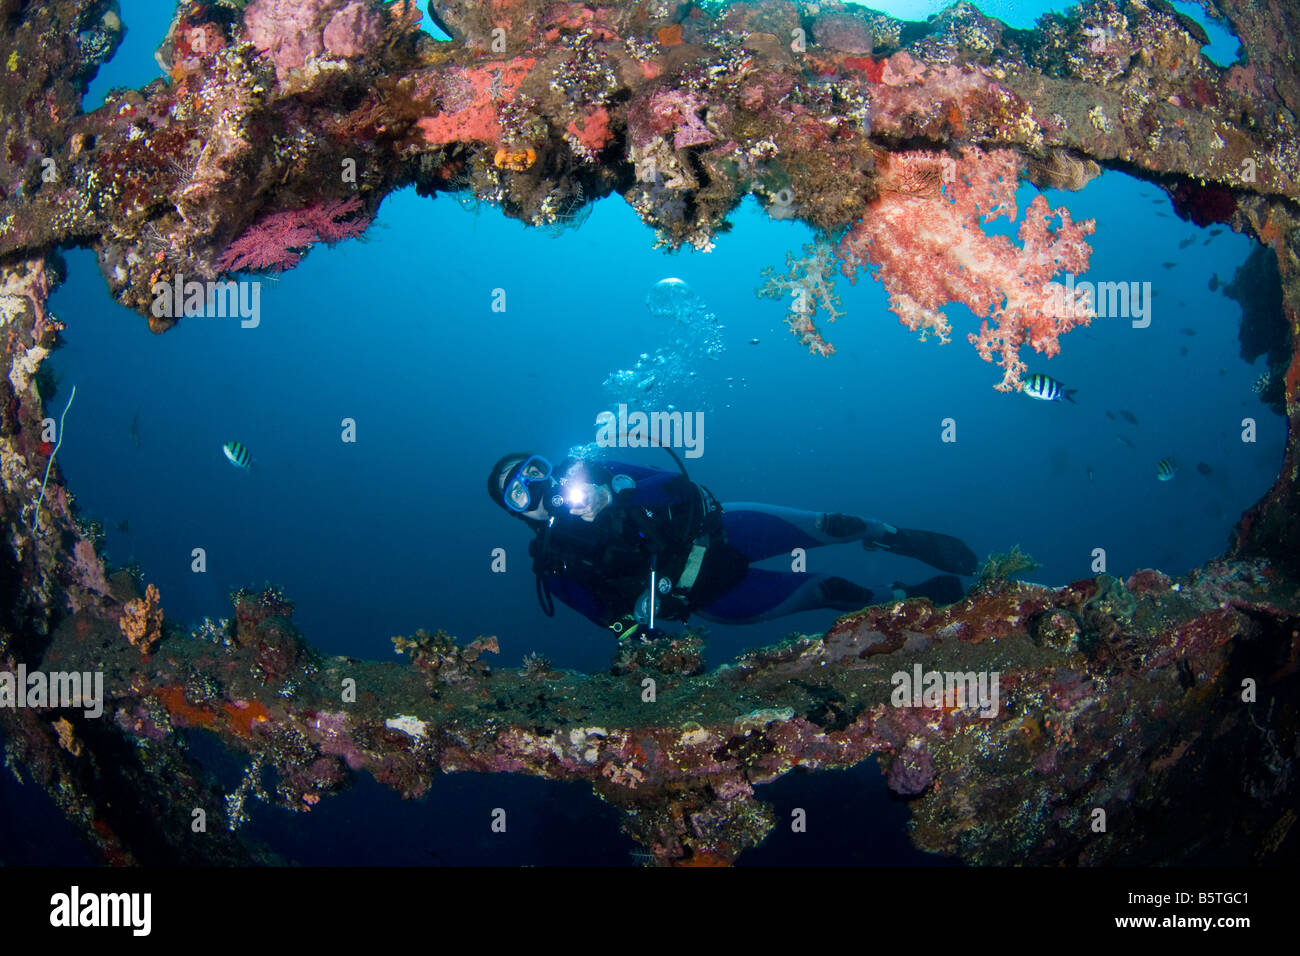 A diver exploring the Liberty wreck, Tulamben, Bali, Indonesia. Stock Photo